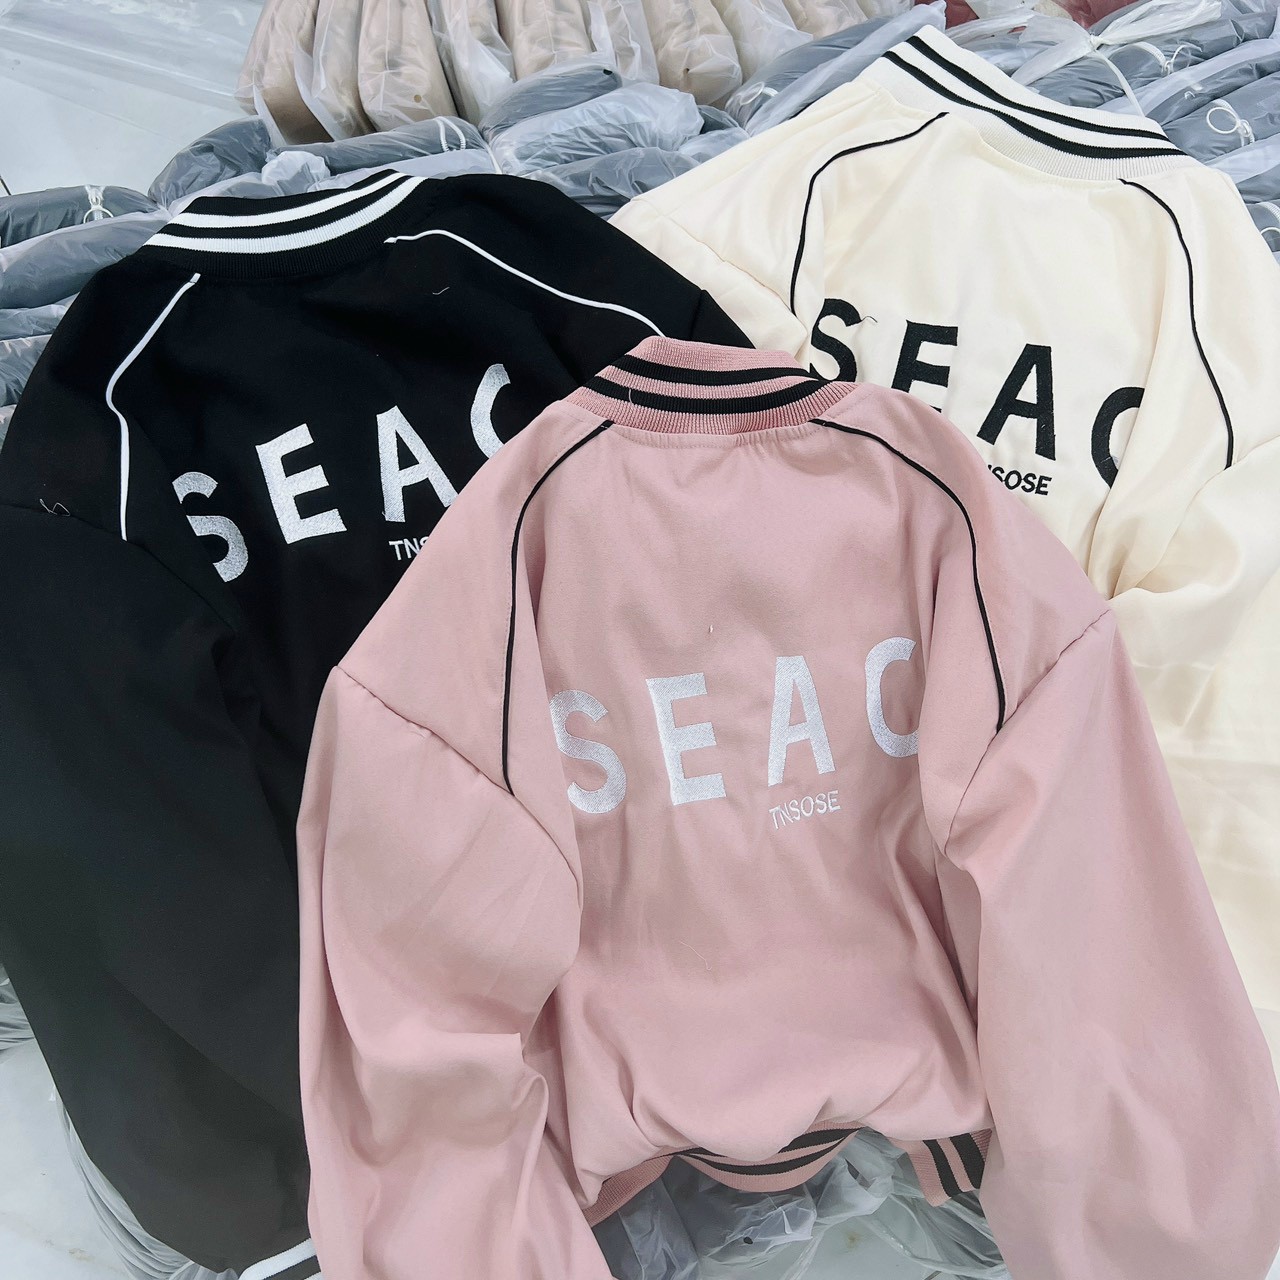 áo khoác lửng chất da lộn in chữ nỗi seac hàng đang bán chạy Form Lửng Phối Nút Bấm Phong Cách Cá Tính Cực Chất Siêu Đẹp